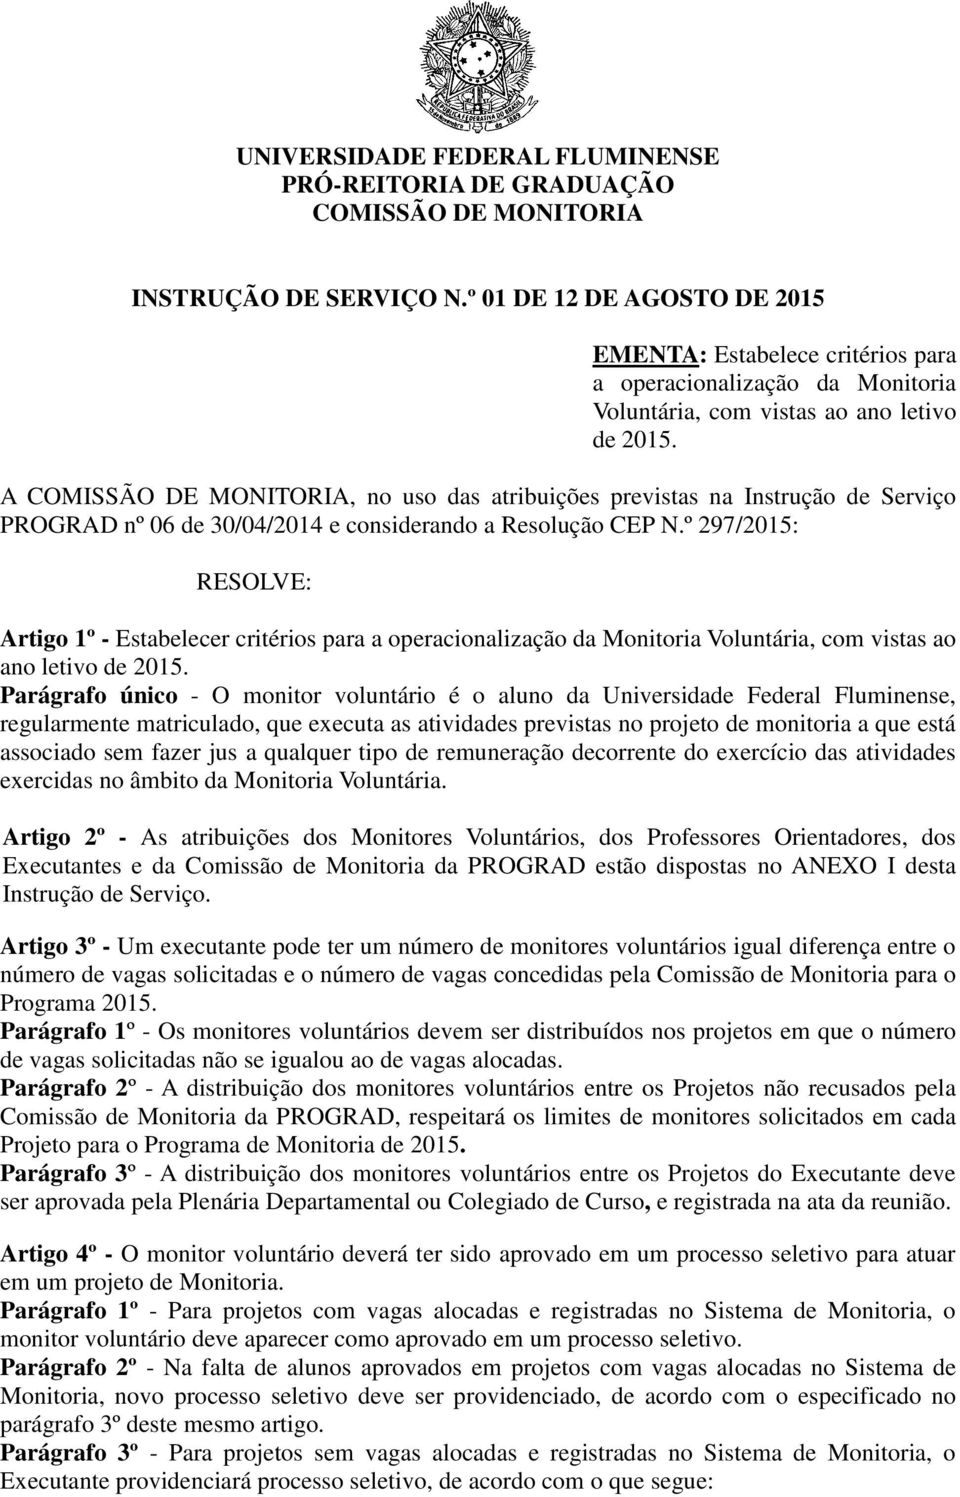 A COMISSÃO DE MONITORIA, no uso das atribuições previstas na Instrução de Serviço PROGRAD nº 06 de 30/04/2014 e considerando a Resolução CEP N.